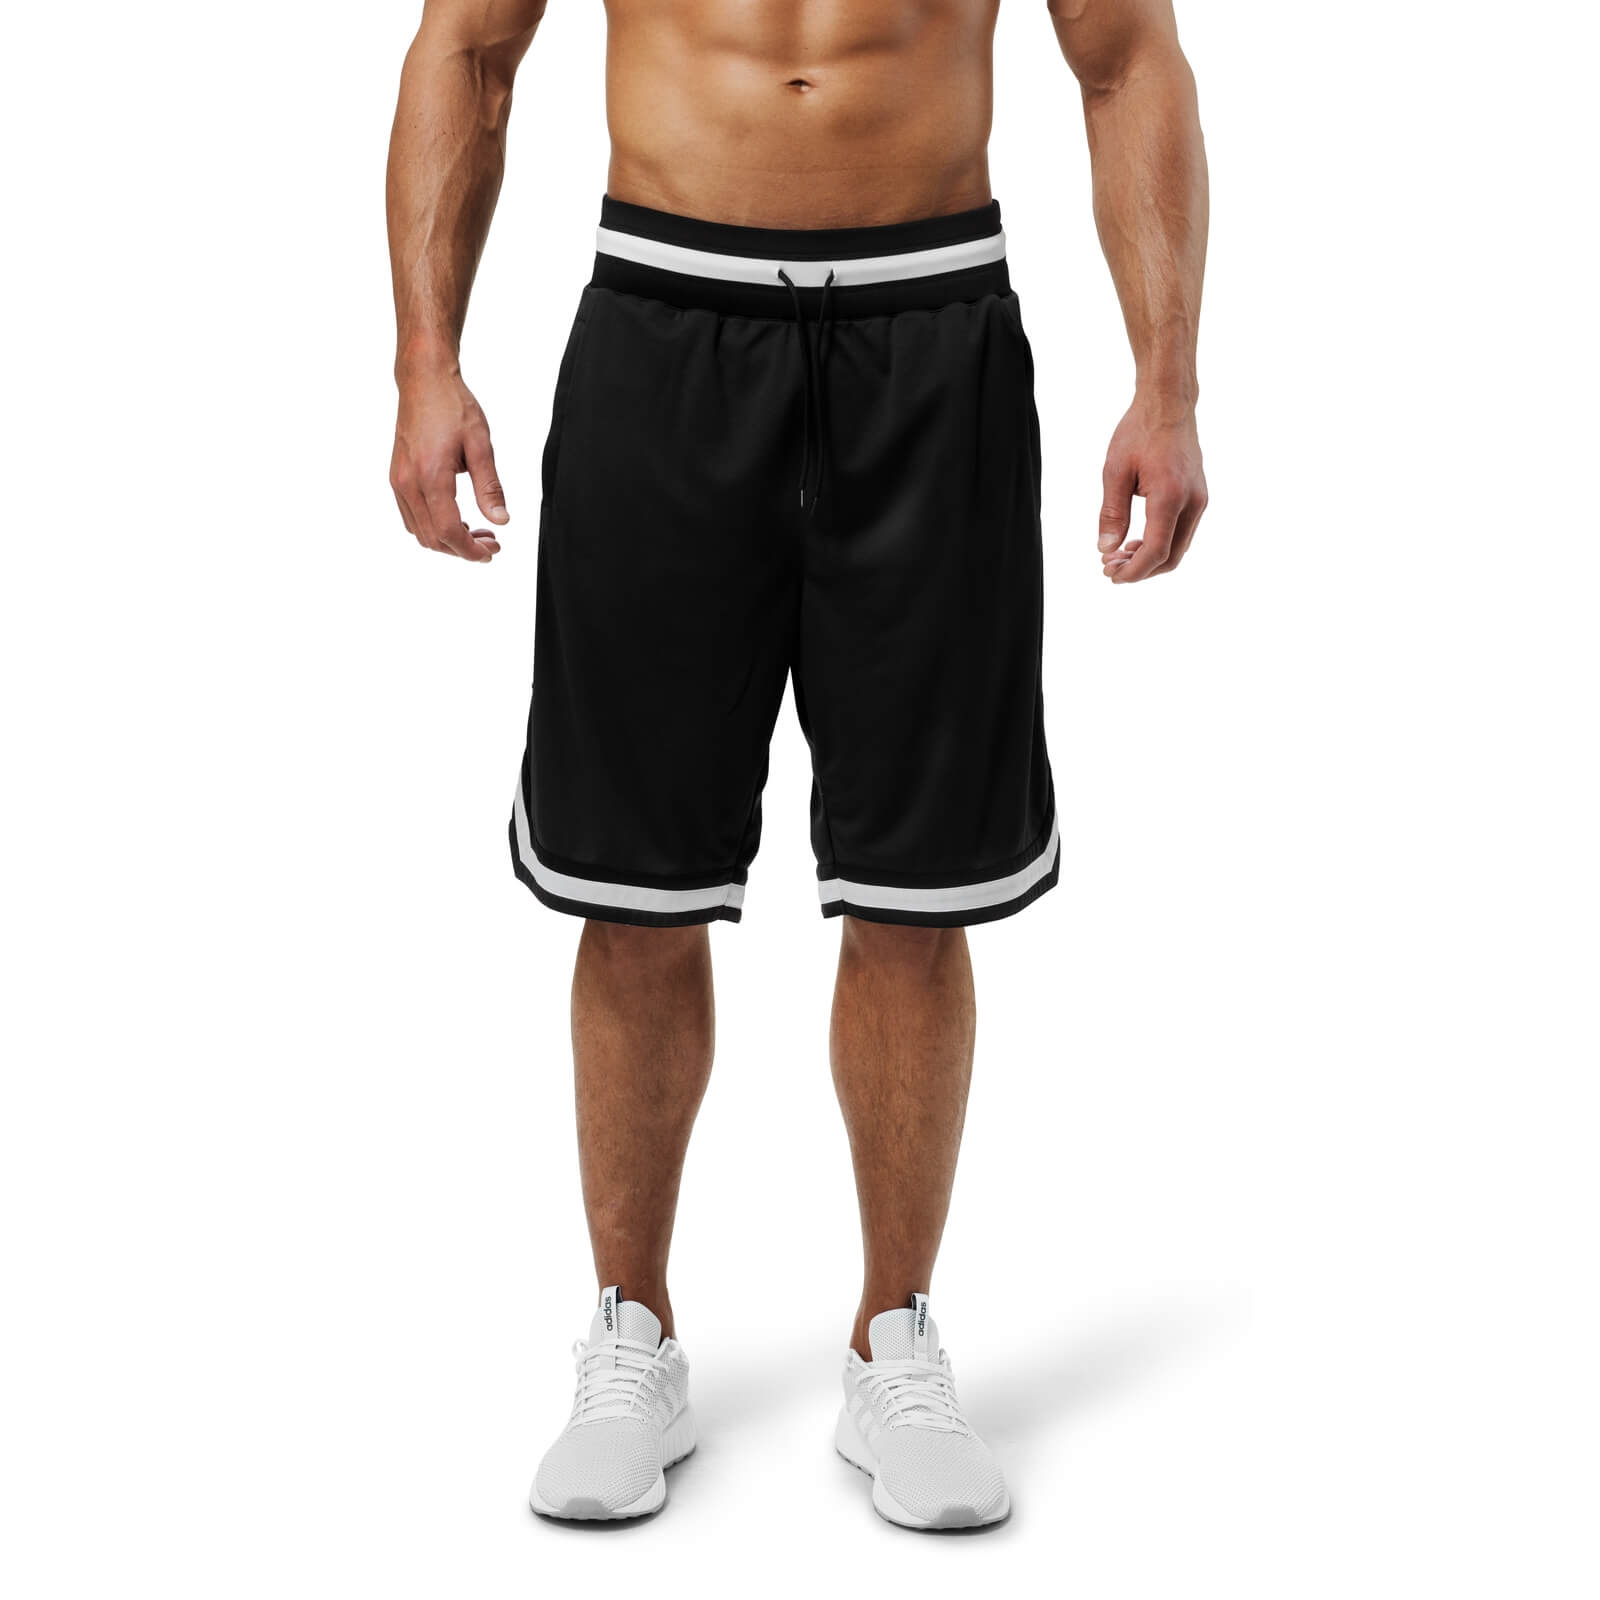 Sjekke Harlem Shorts, black, Better Bodies hos SportGymButikken.no